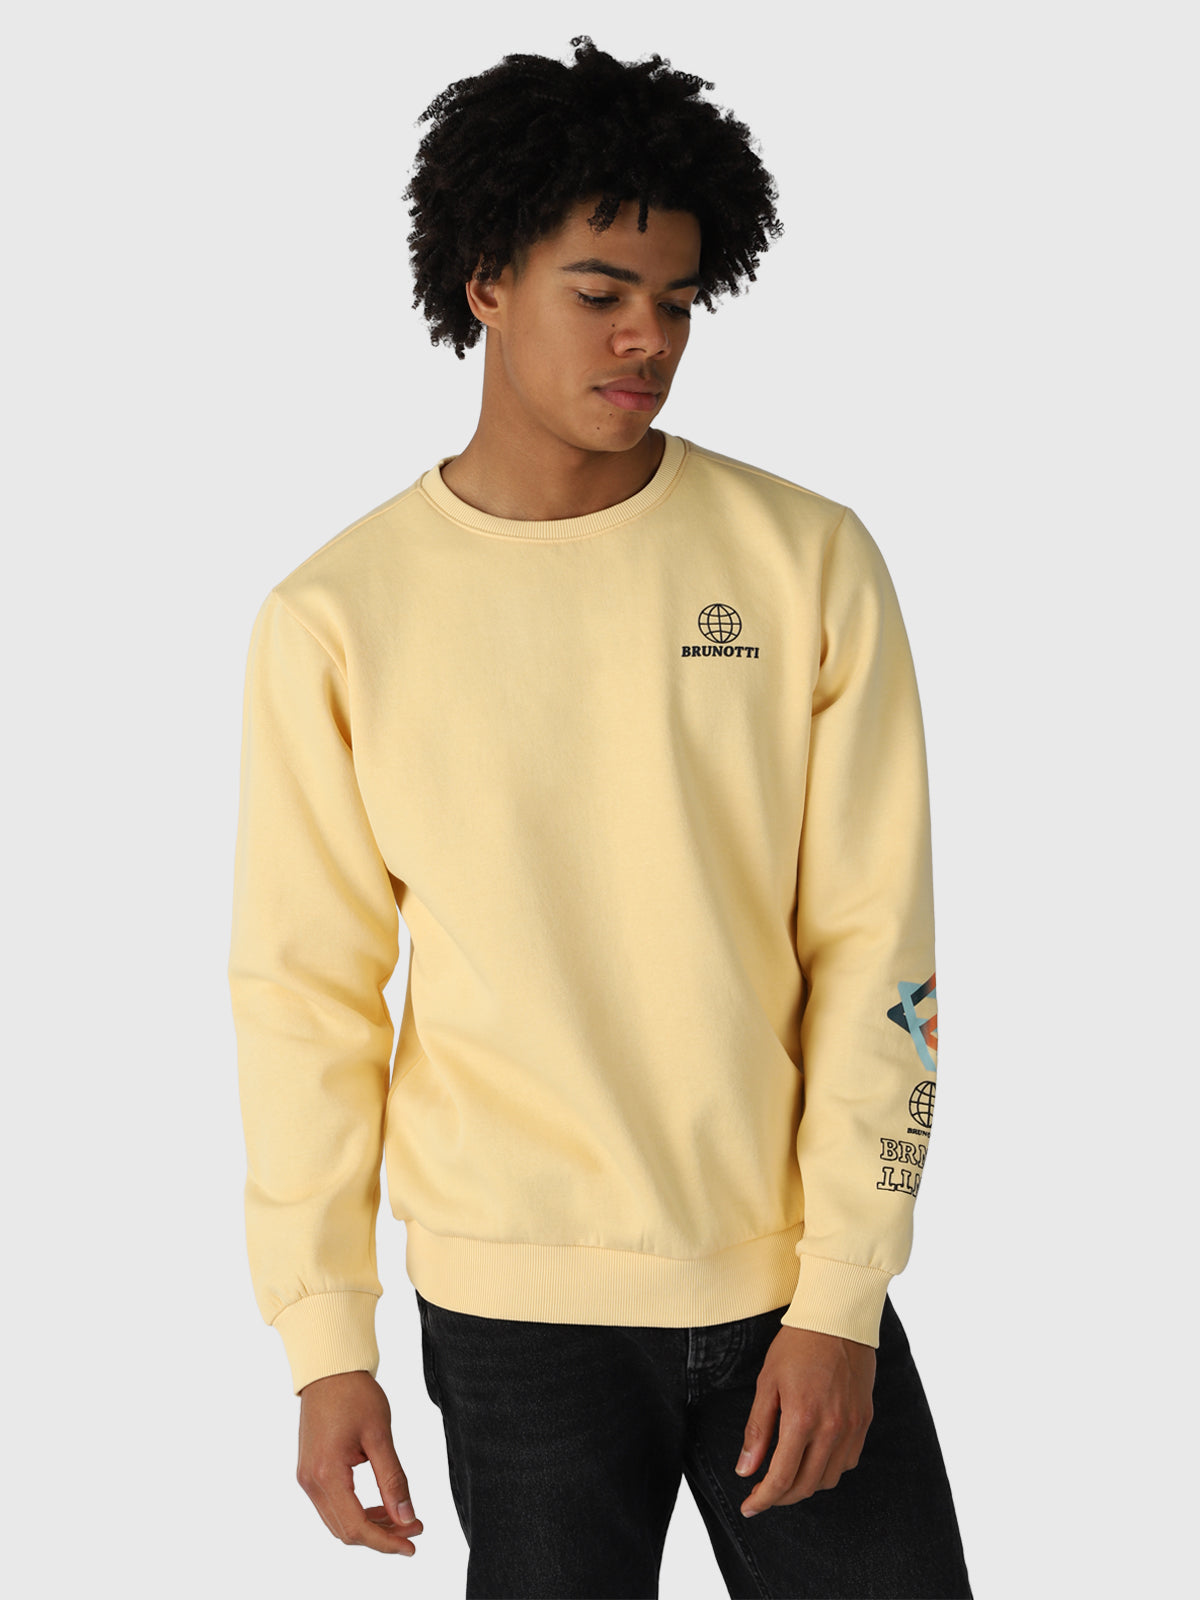 Murray-R Herren Sweatshirt | Gelb